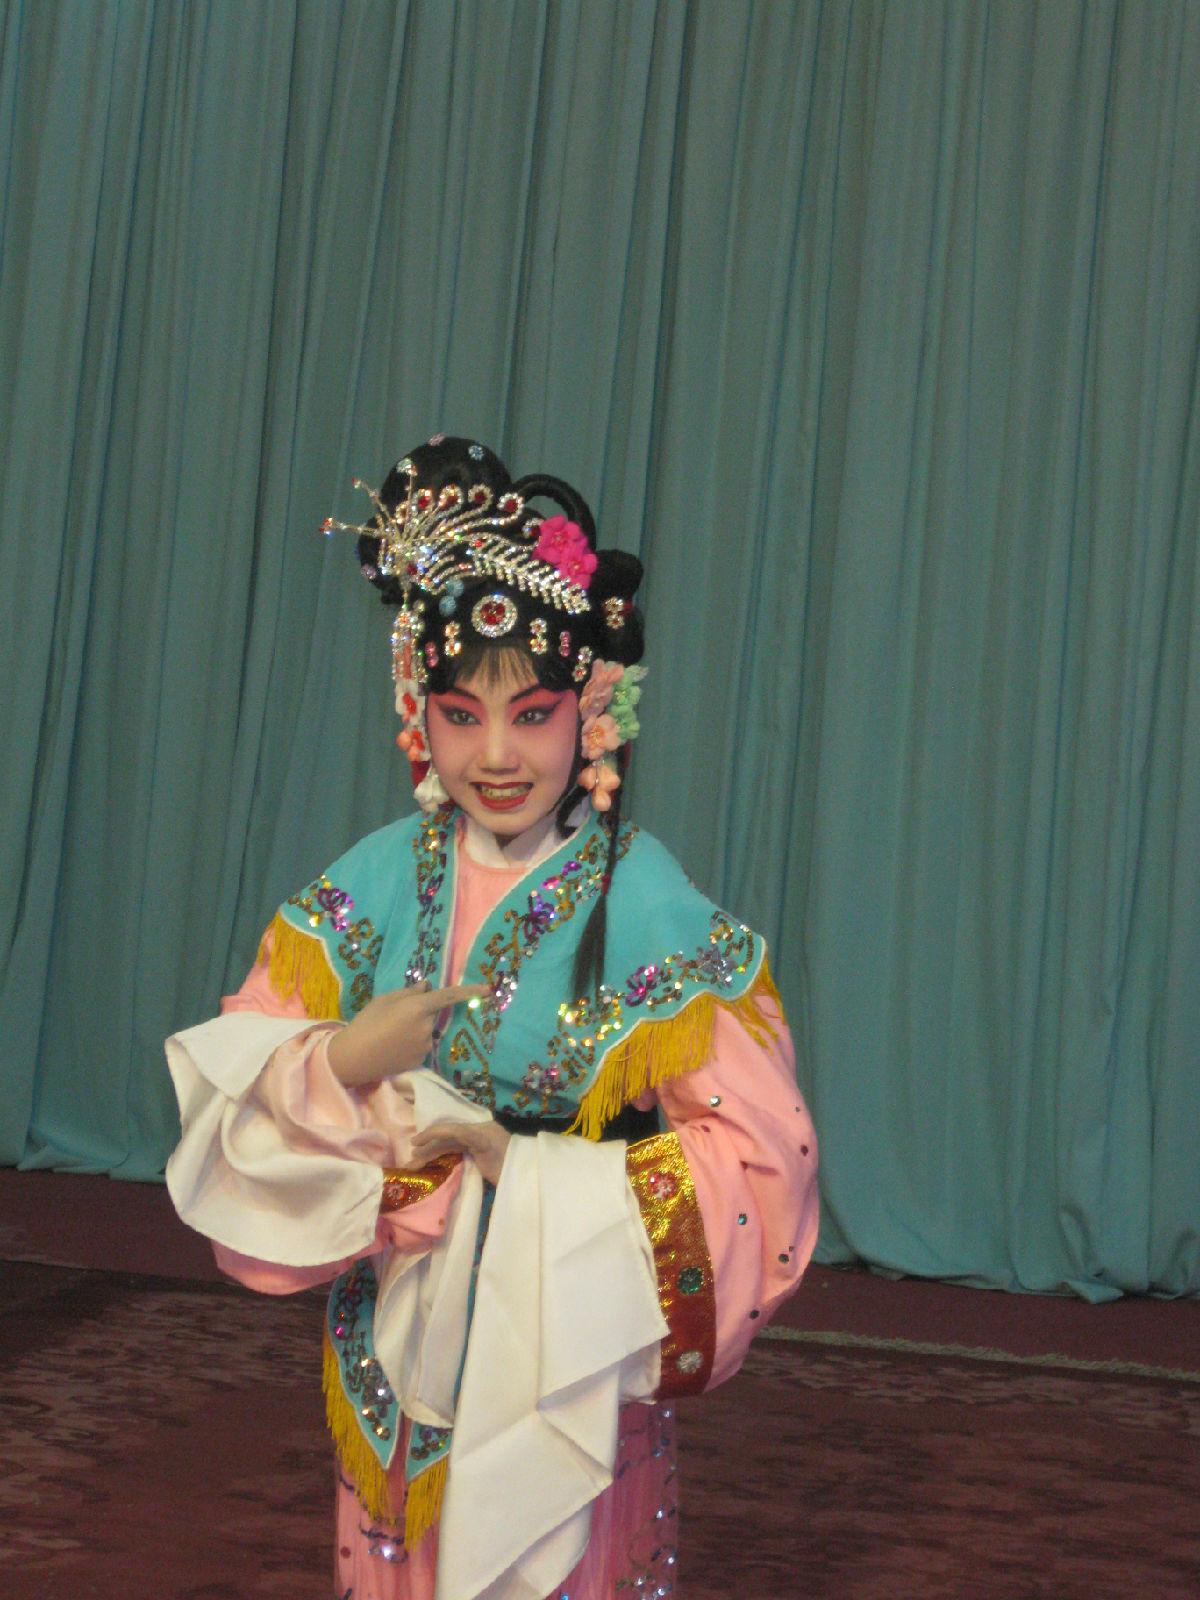 全部版本 最新版本  刘烁宇从小喜欢京剧,7岁跟随老师常秋月参加